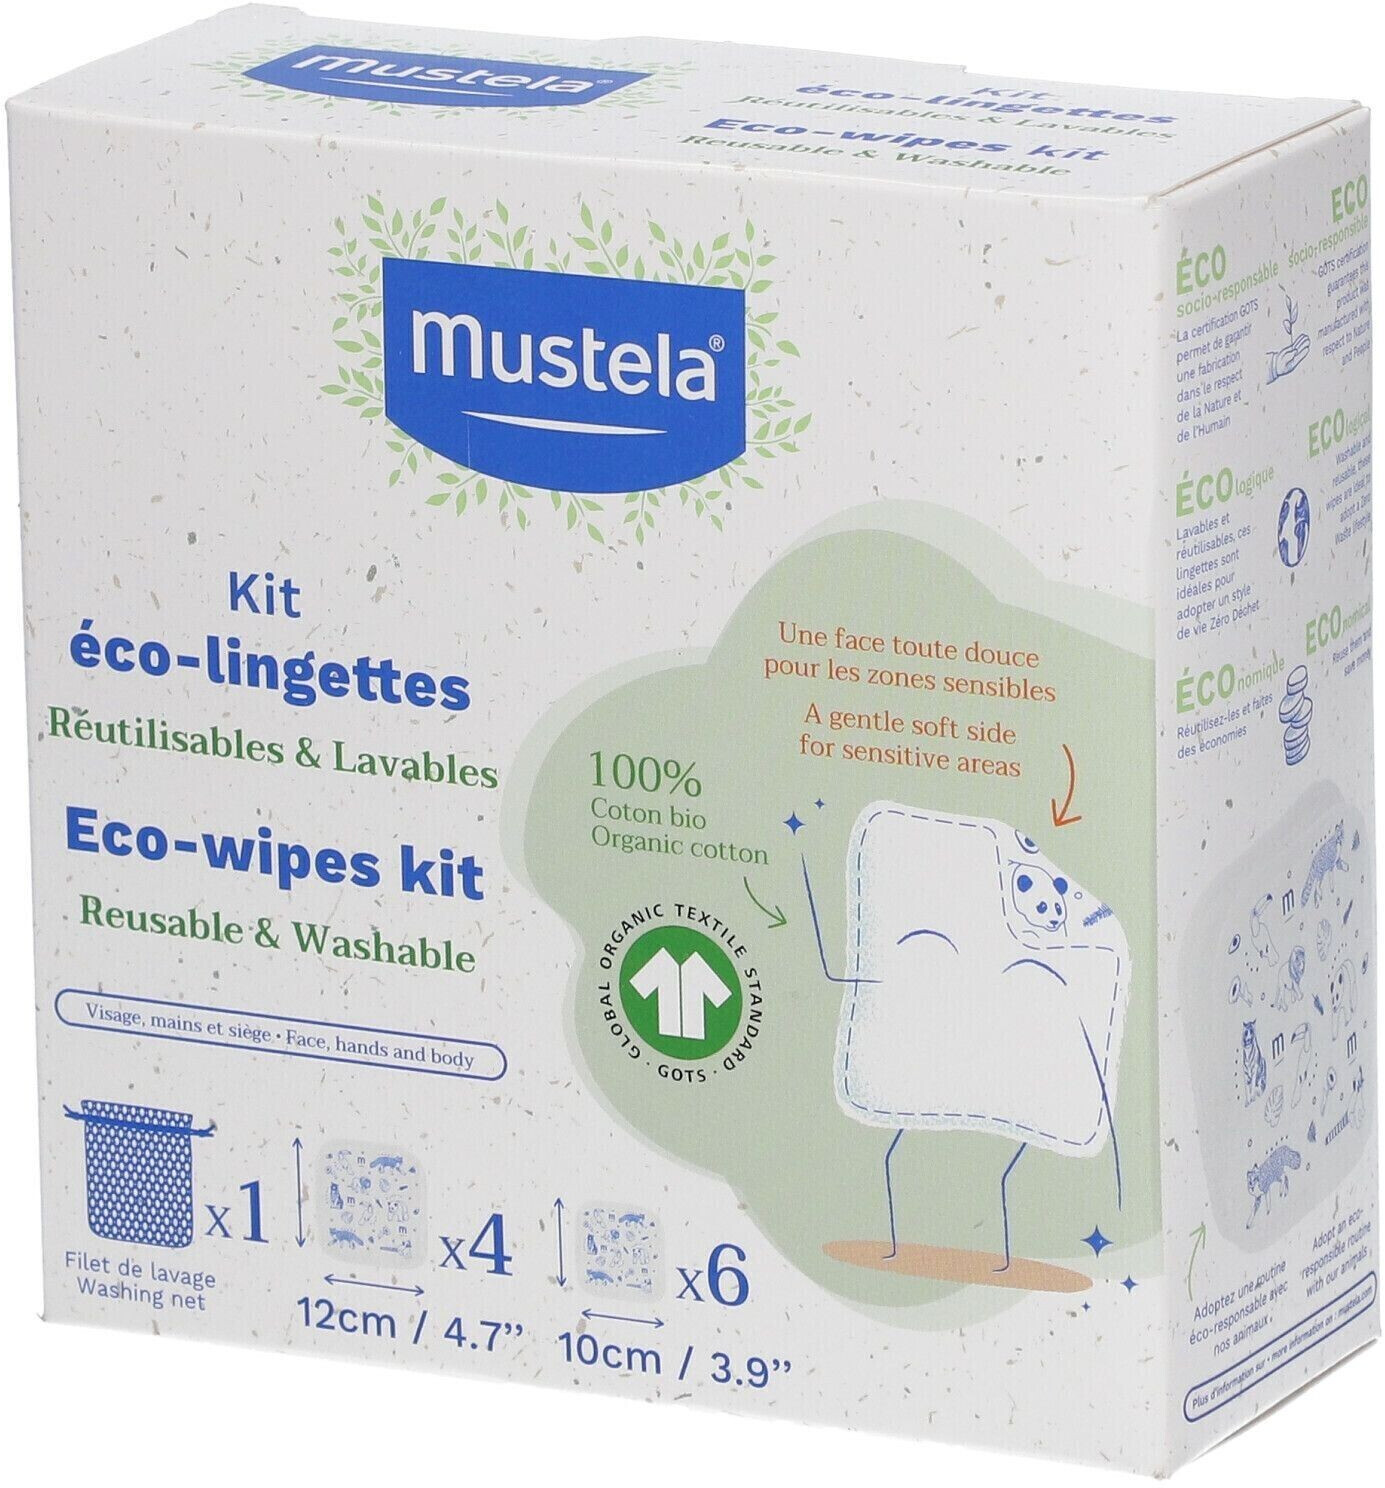 Mustela Bebe Enfant Kit Eco Lingette Contient 6 Lingette 10x10 + 4 Lingettes  12x12cm + Filet Lavage